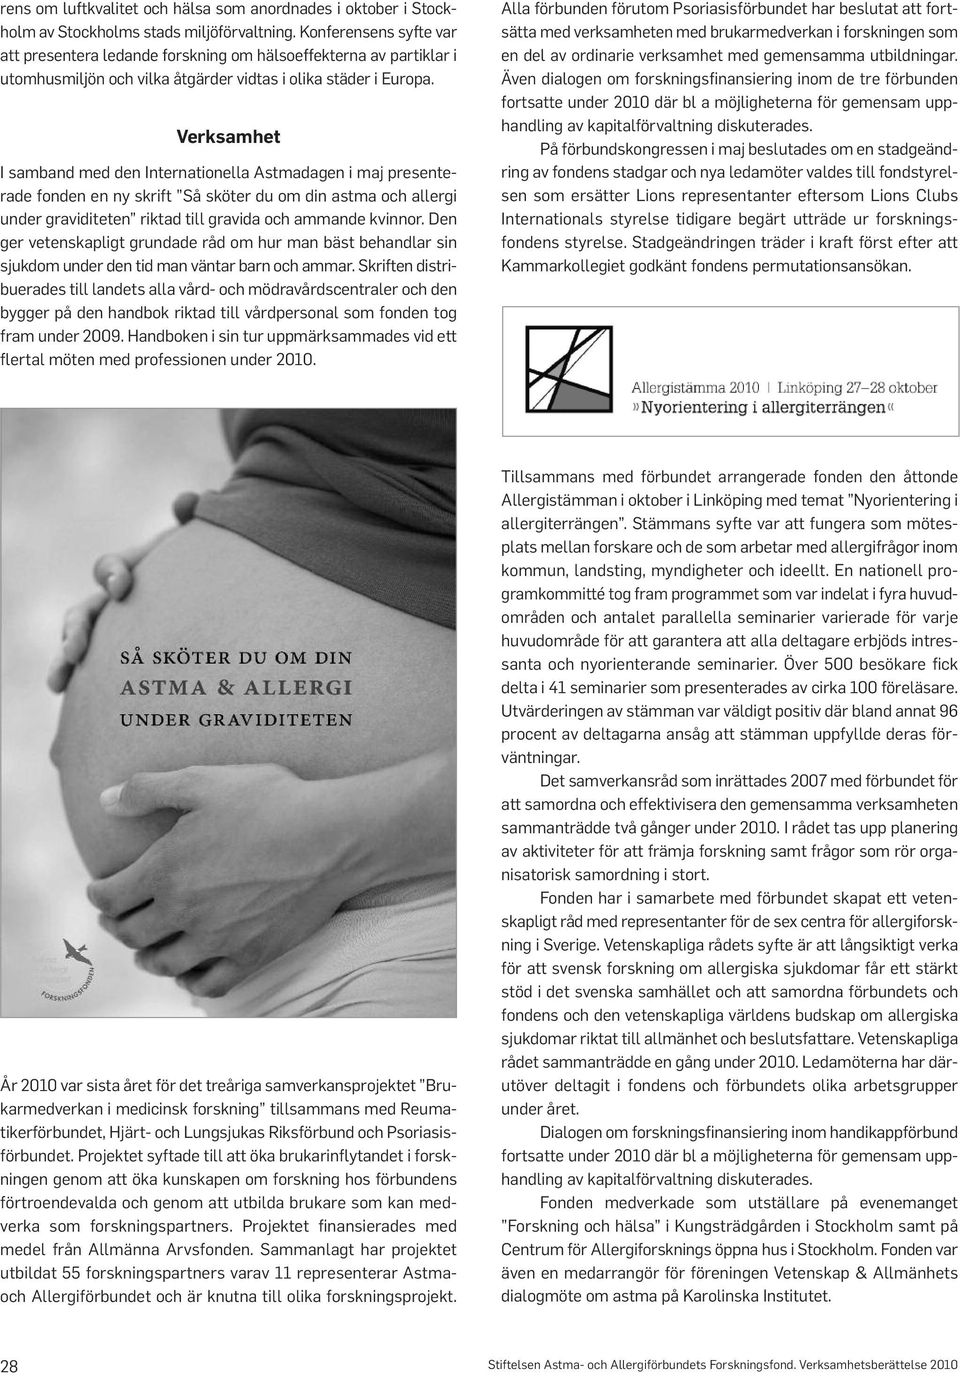 Verksamhet I samband med den Internationella Astmadagen i maj presenterade fonden en ny skrift Så sköter du om din astma och allergi under graviditeten riktad till gravida och ammande kvinnor.